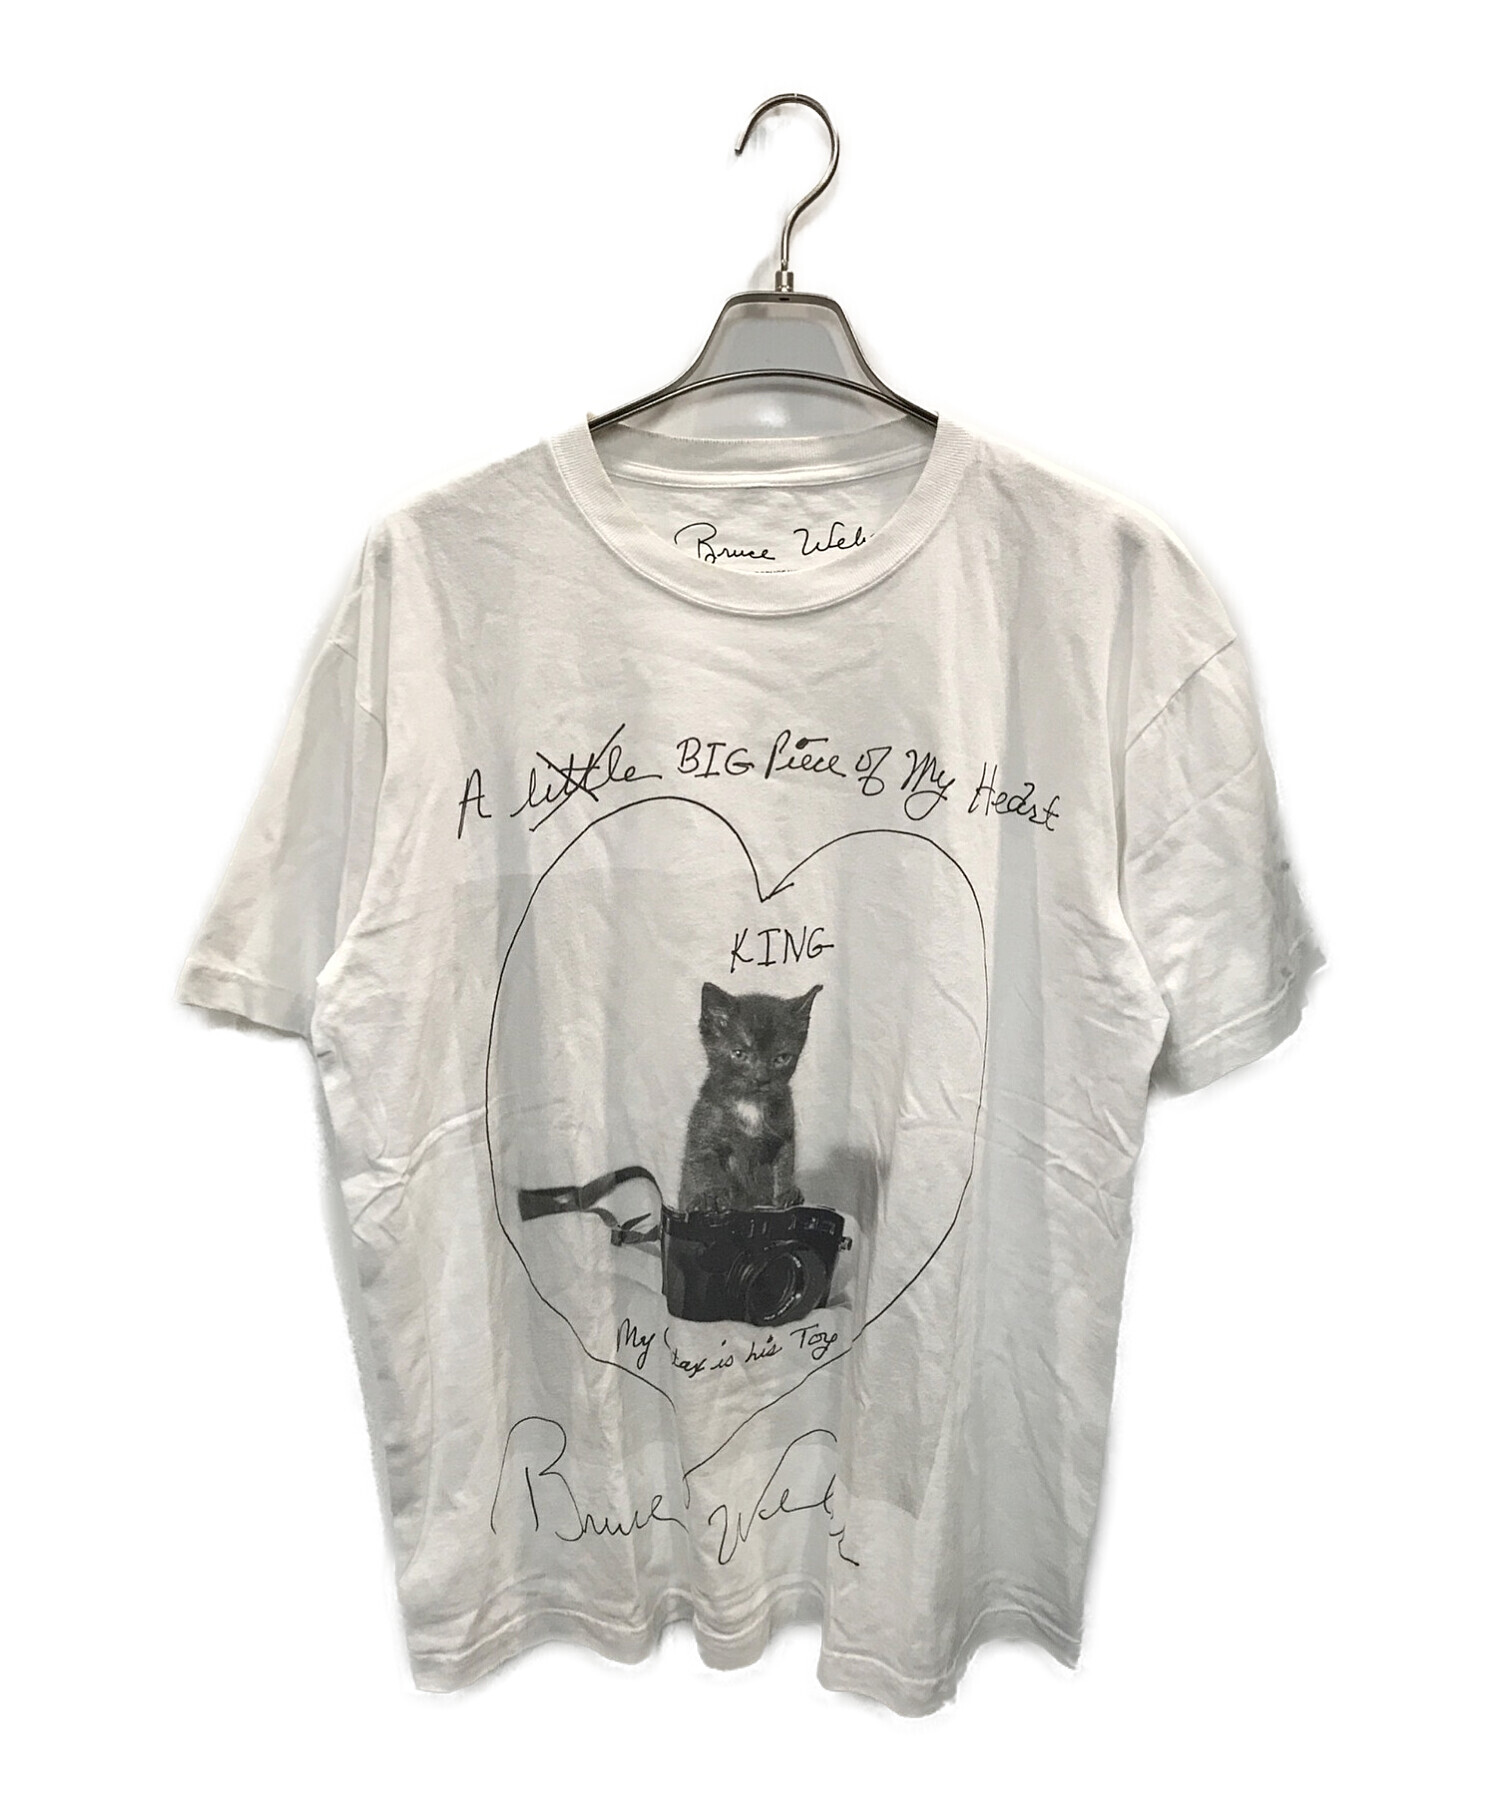 BRUCE WEBER (ブルース・ウェバー) BIOTOP (ビオトープ) 10c (テンシー) Anniversary Photo  T-shirts ホワイト サイズ:XL